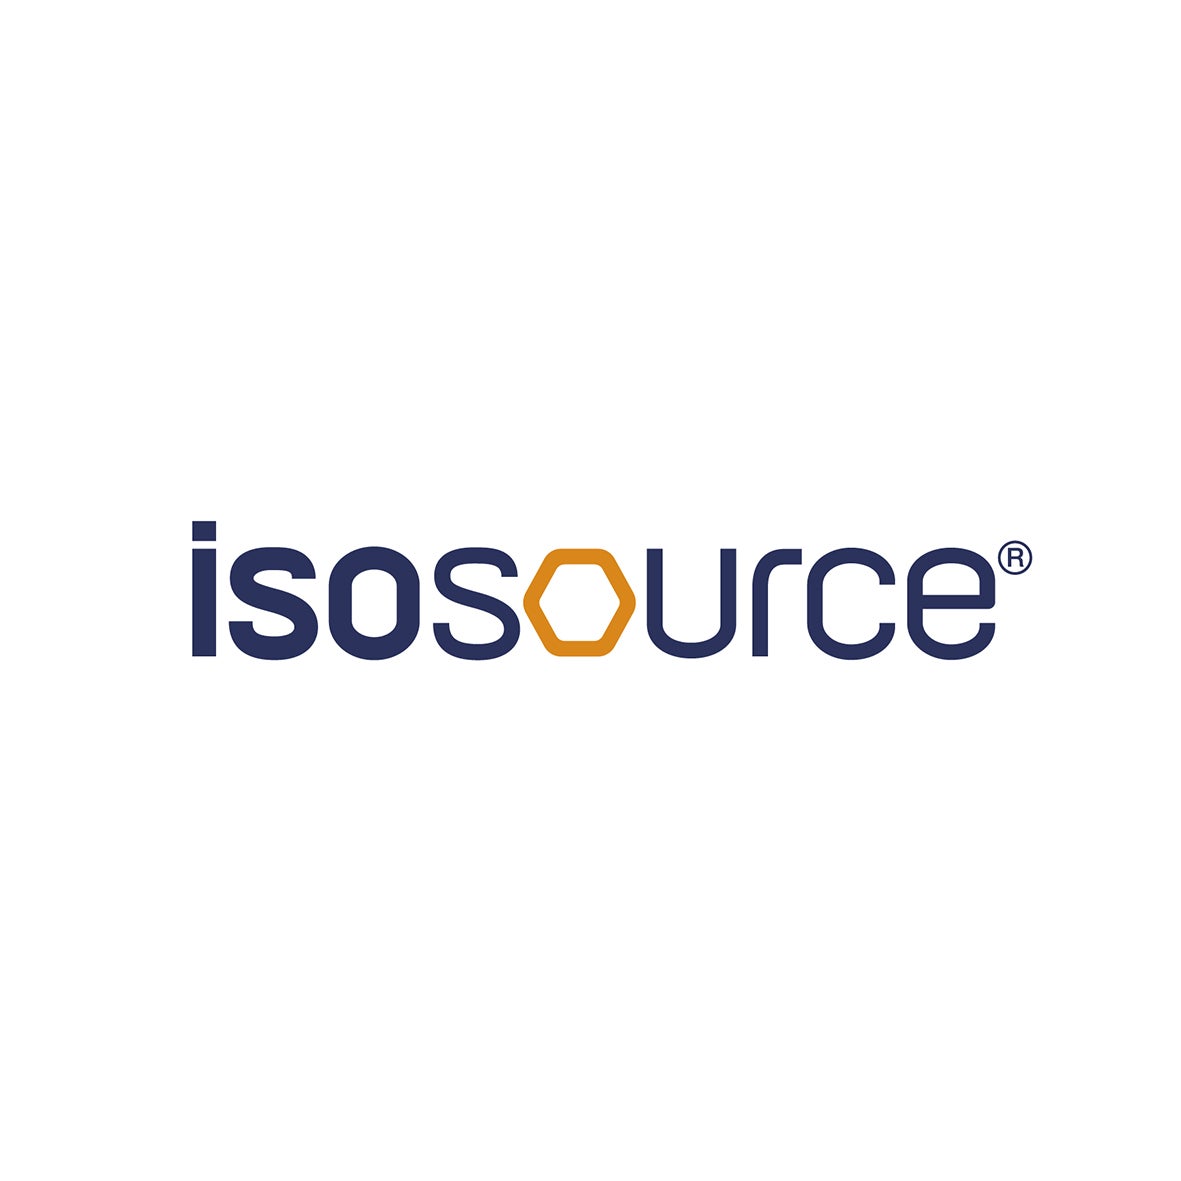 NHSc_Logos_ISOSOURCE